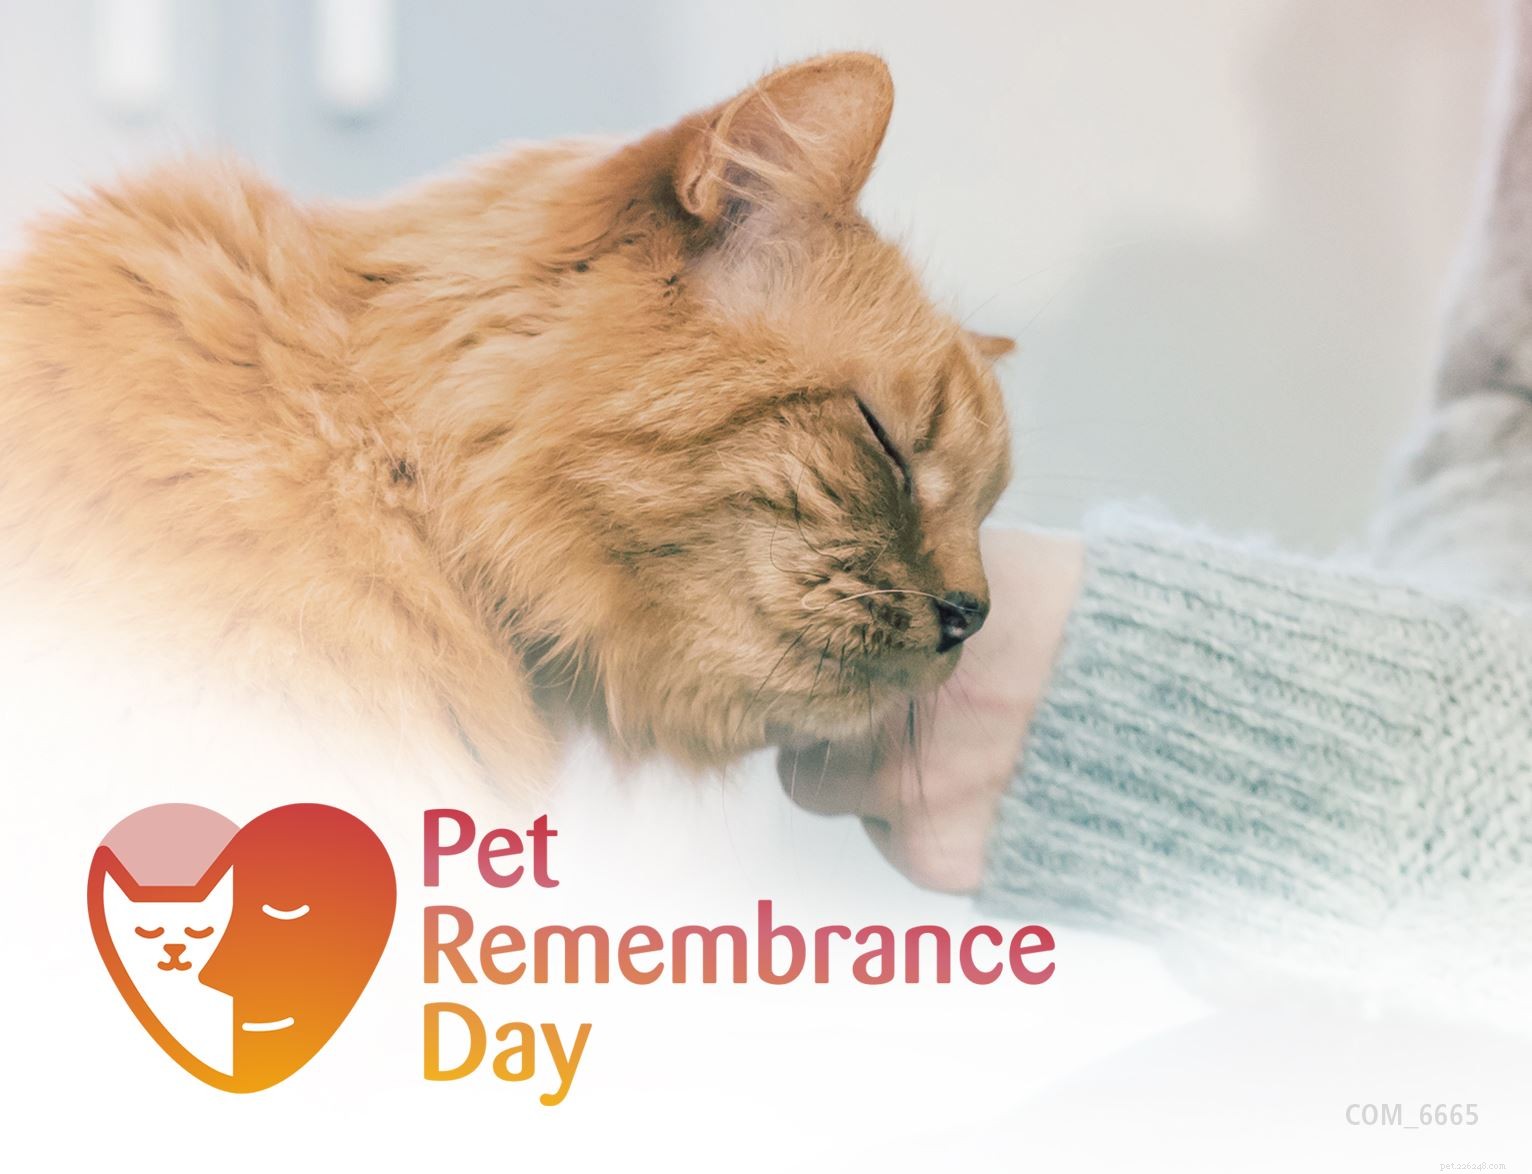 Objevte speciální vzpomínkové nápady, jak uctít památku své milované kočky tento Den vzpomínek na domácí mazlíčky 